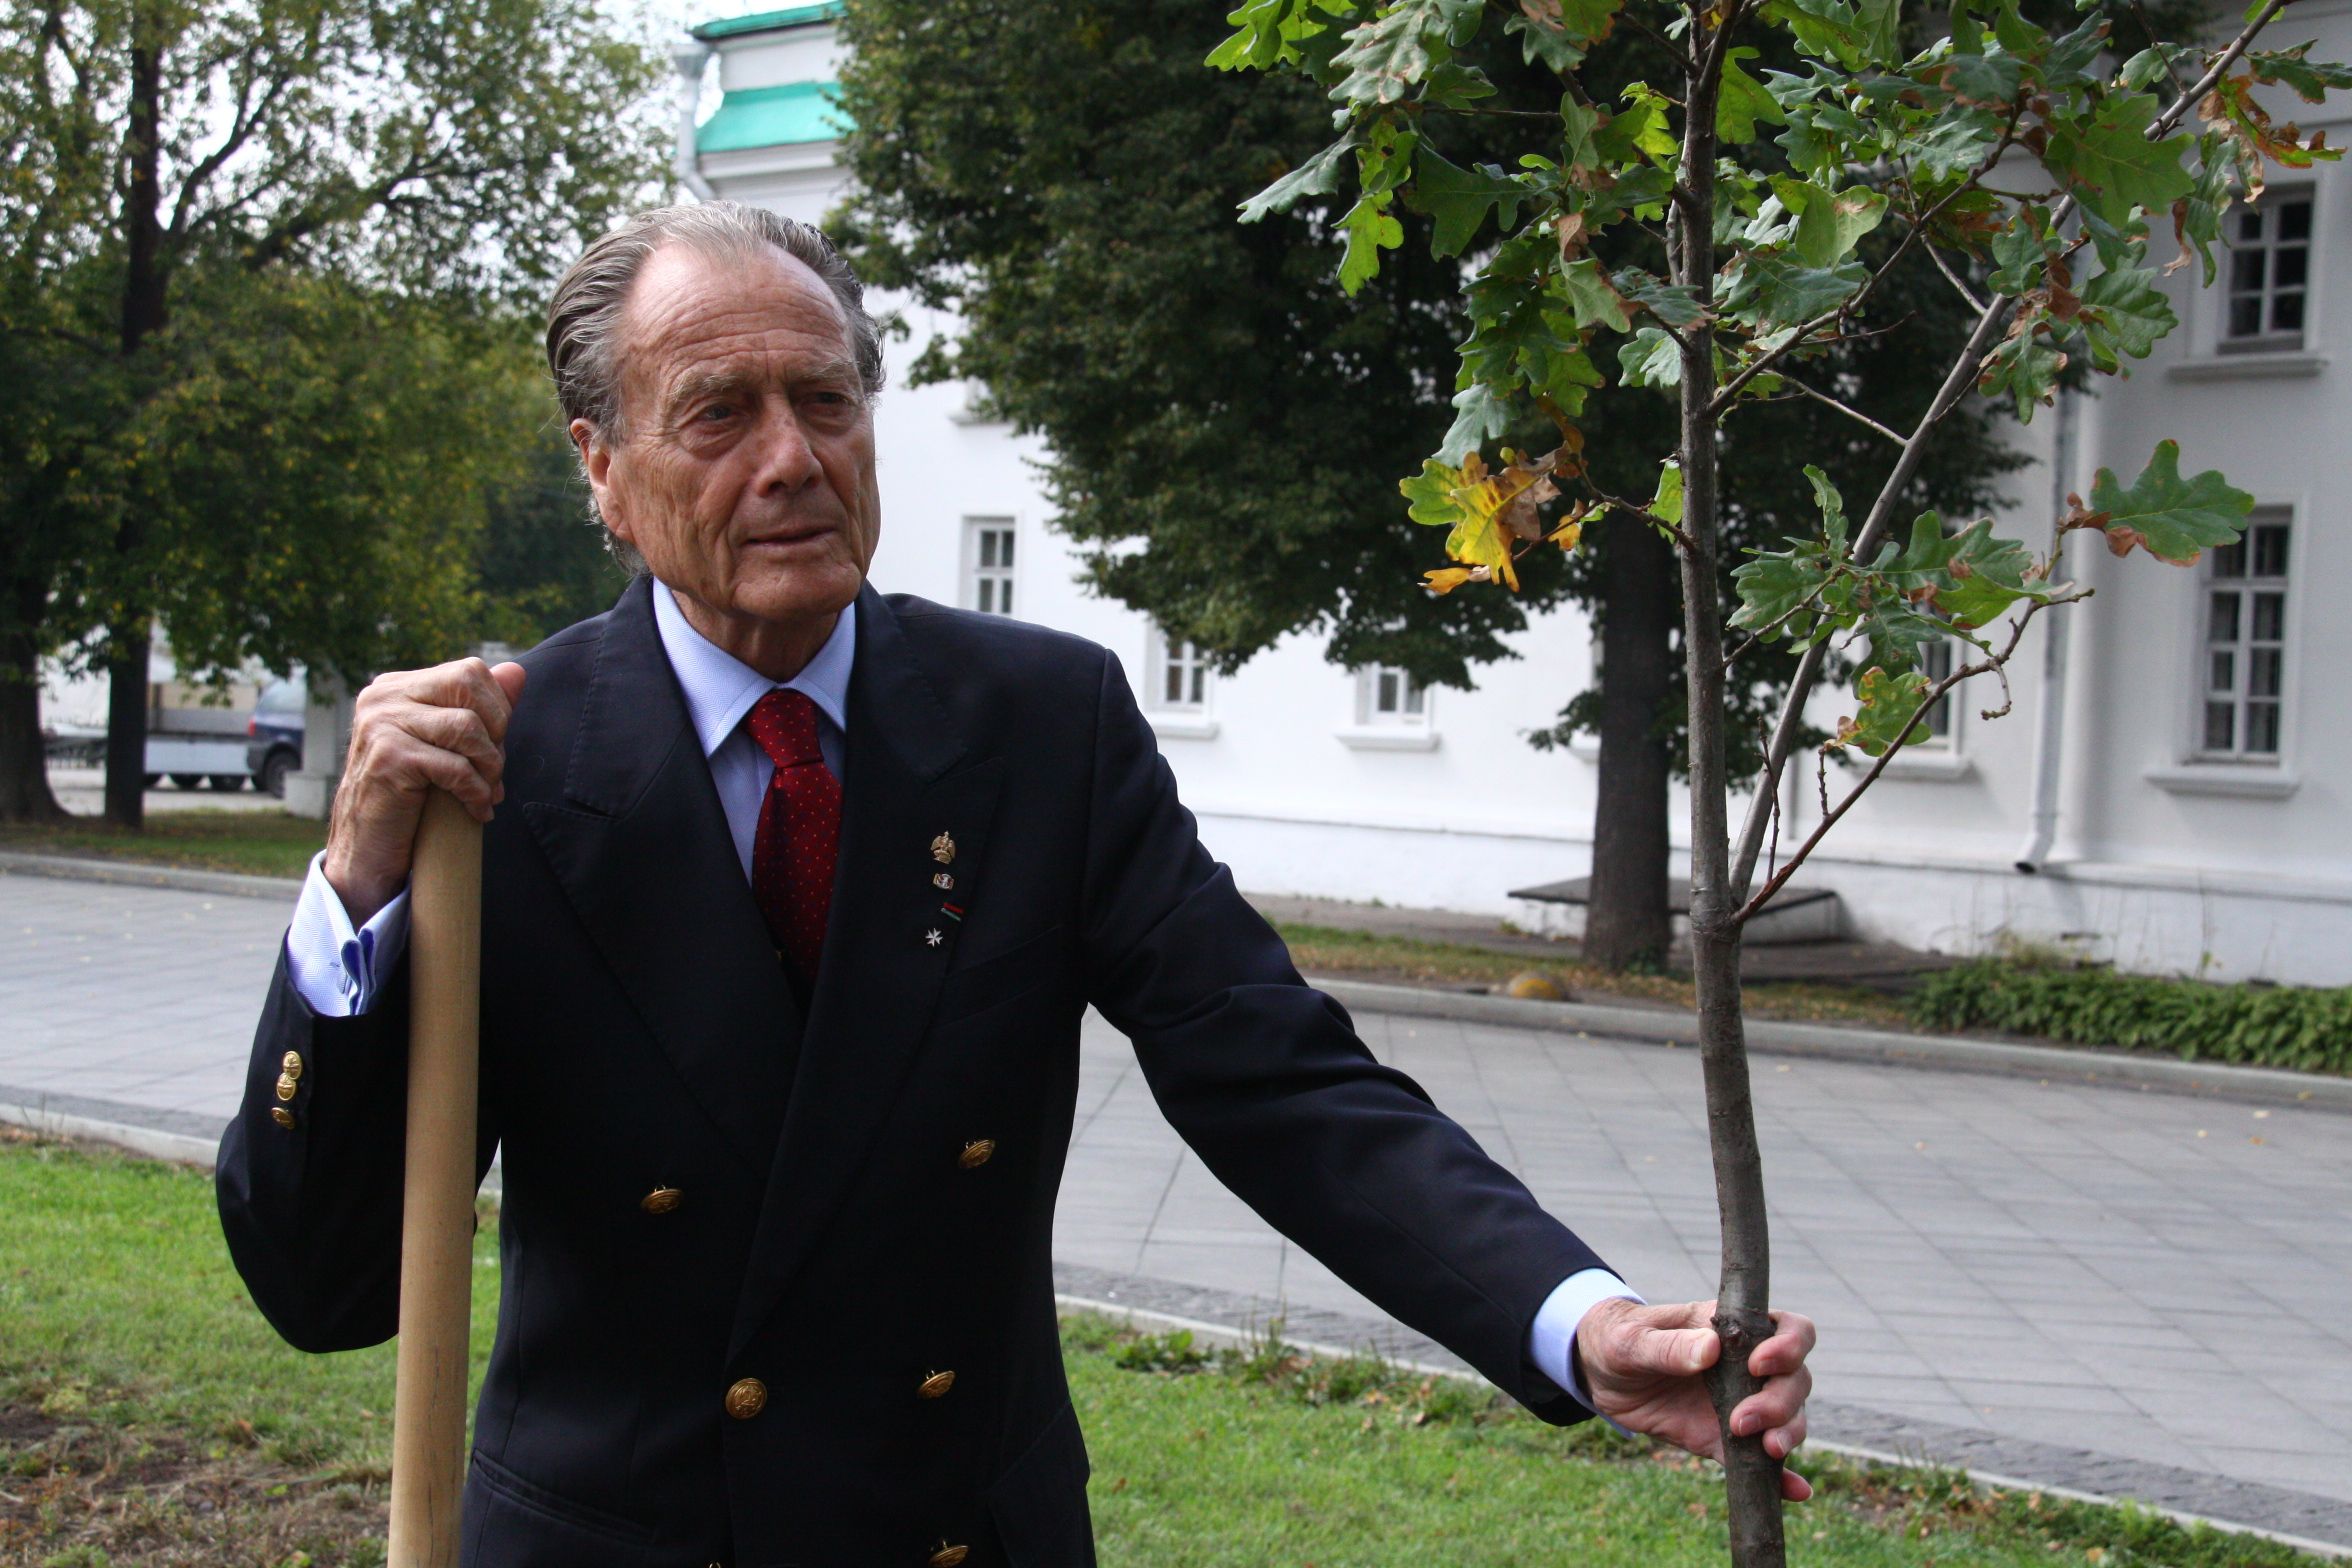 27 августа 2015 года. Граф Петр Шереметев сажает дуб у ворот парка «Останкино». Фото: Павел Волков